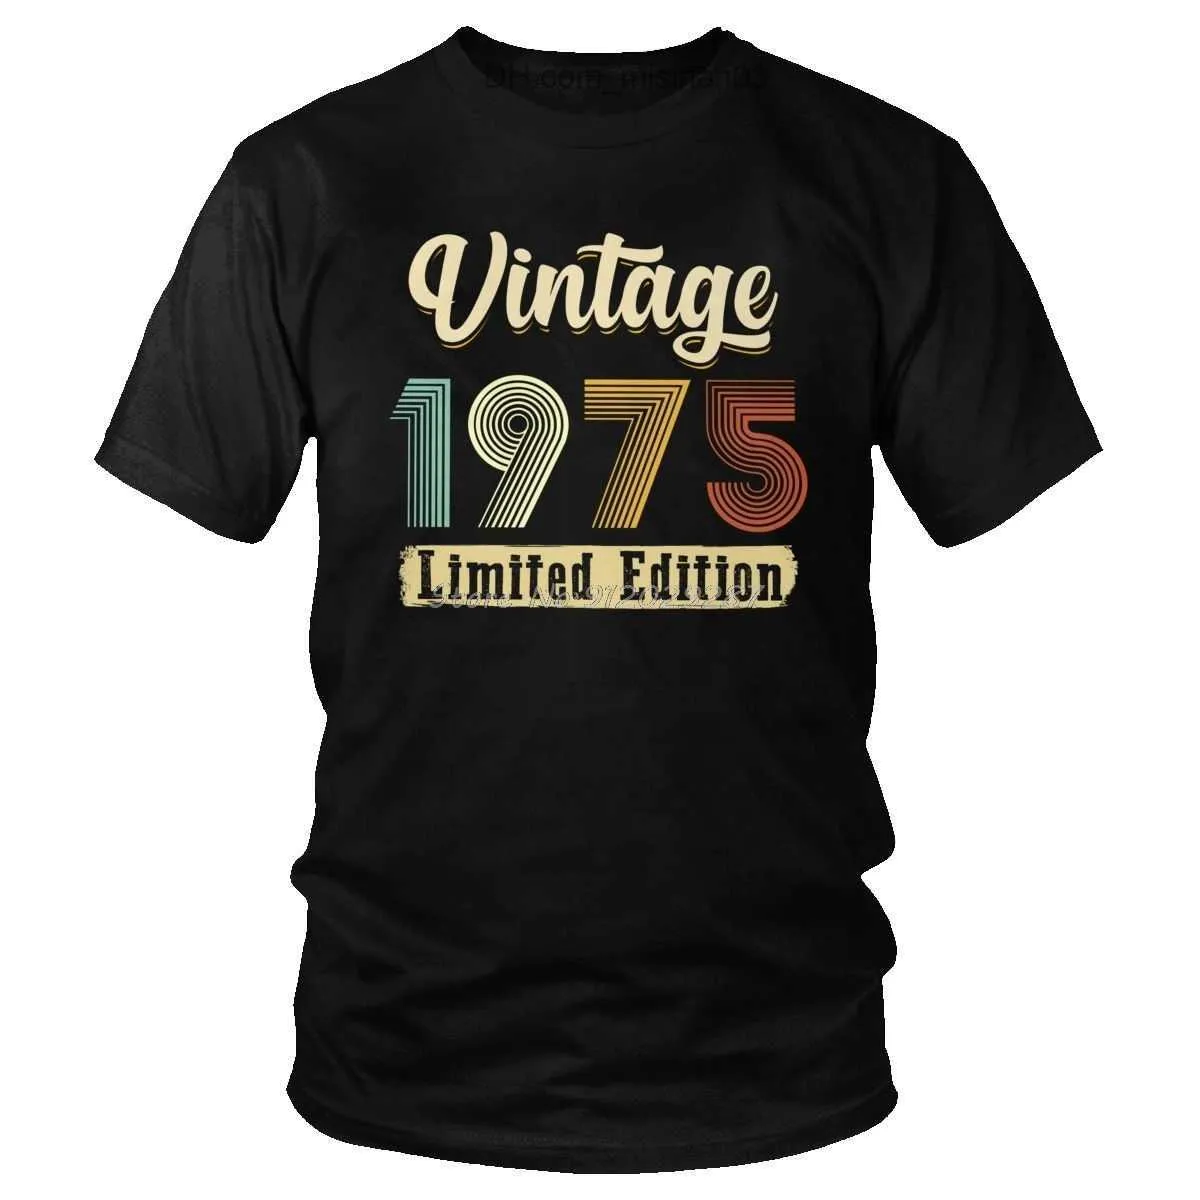 Herren T-Shirts Herren T-Shirts Klassisches Vintage 1975 T-Shirt Männer Kurzarm Geburtstagsgeschenk T-Shirt Lässige weiche Baumwolle Slim Fit T-Shirts Kleidung Z230705